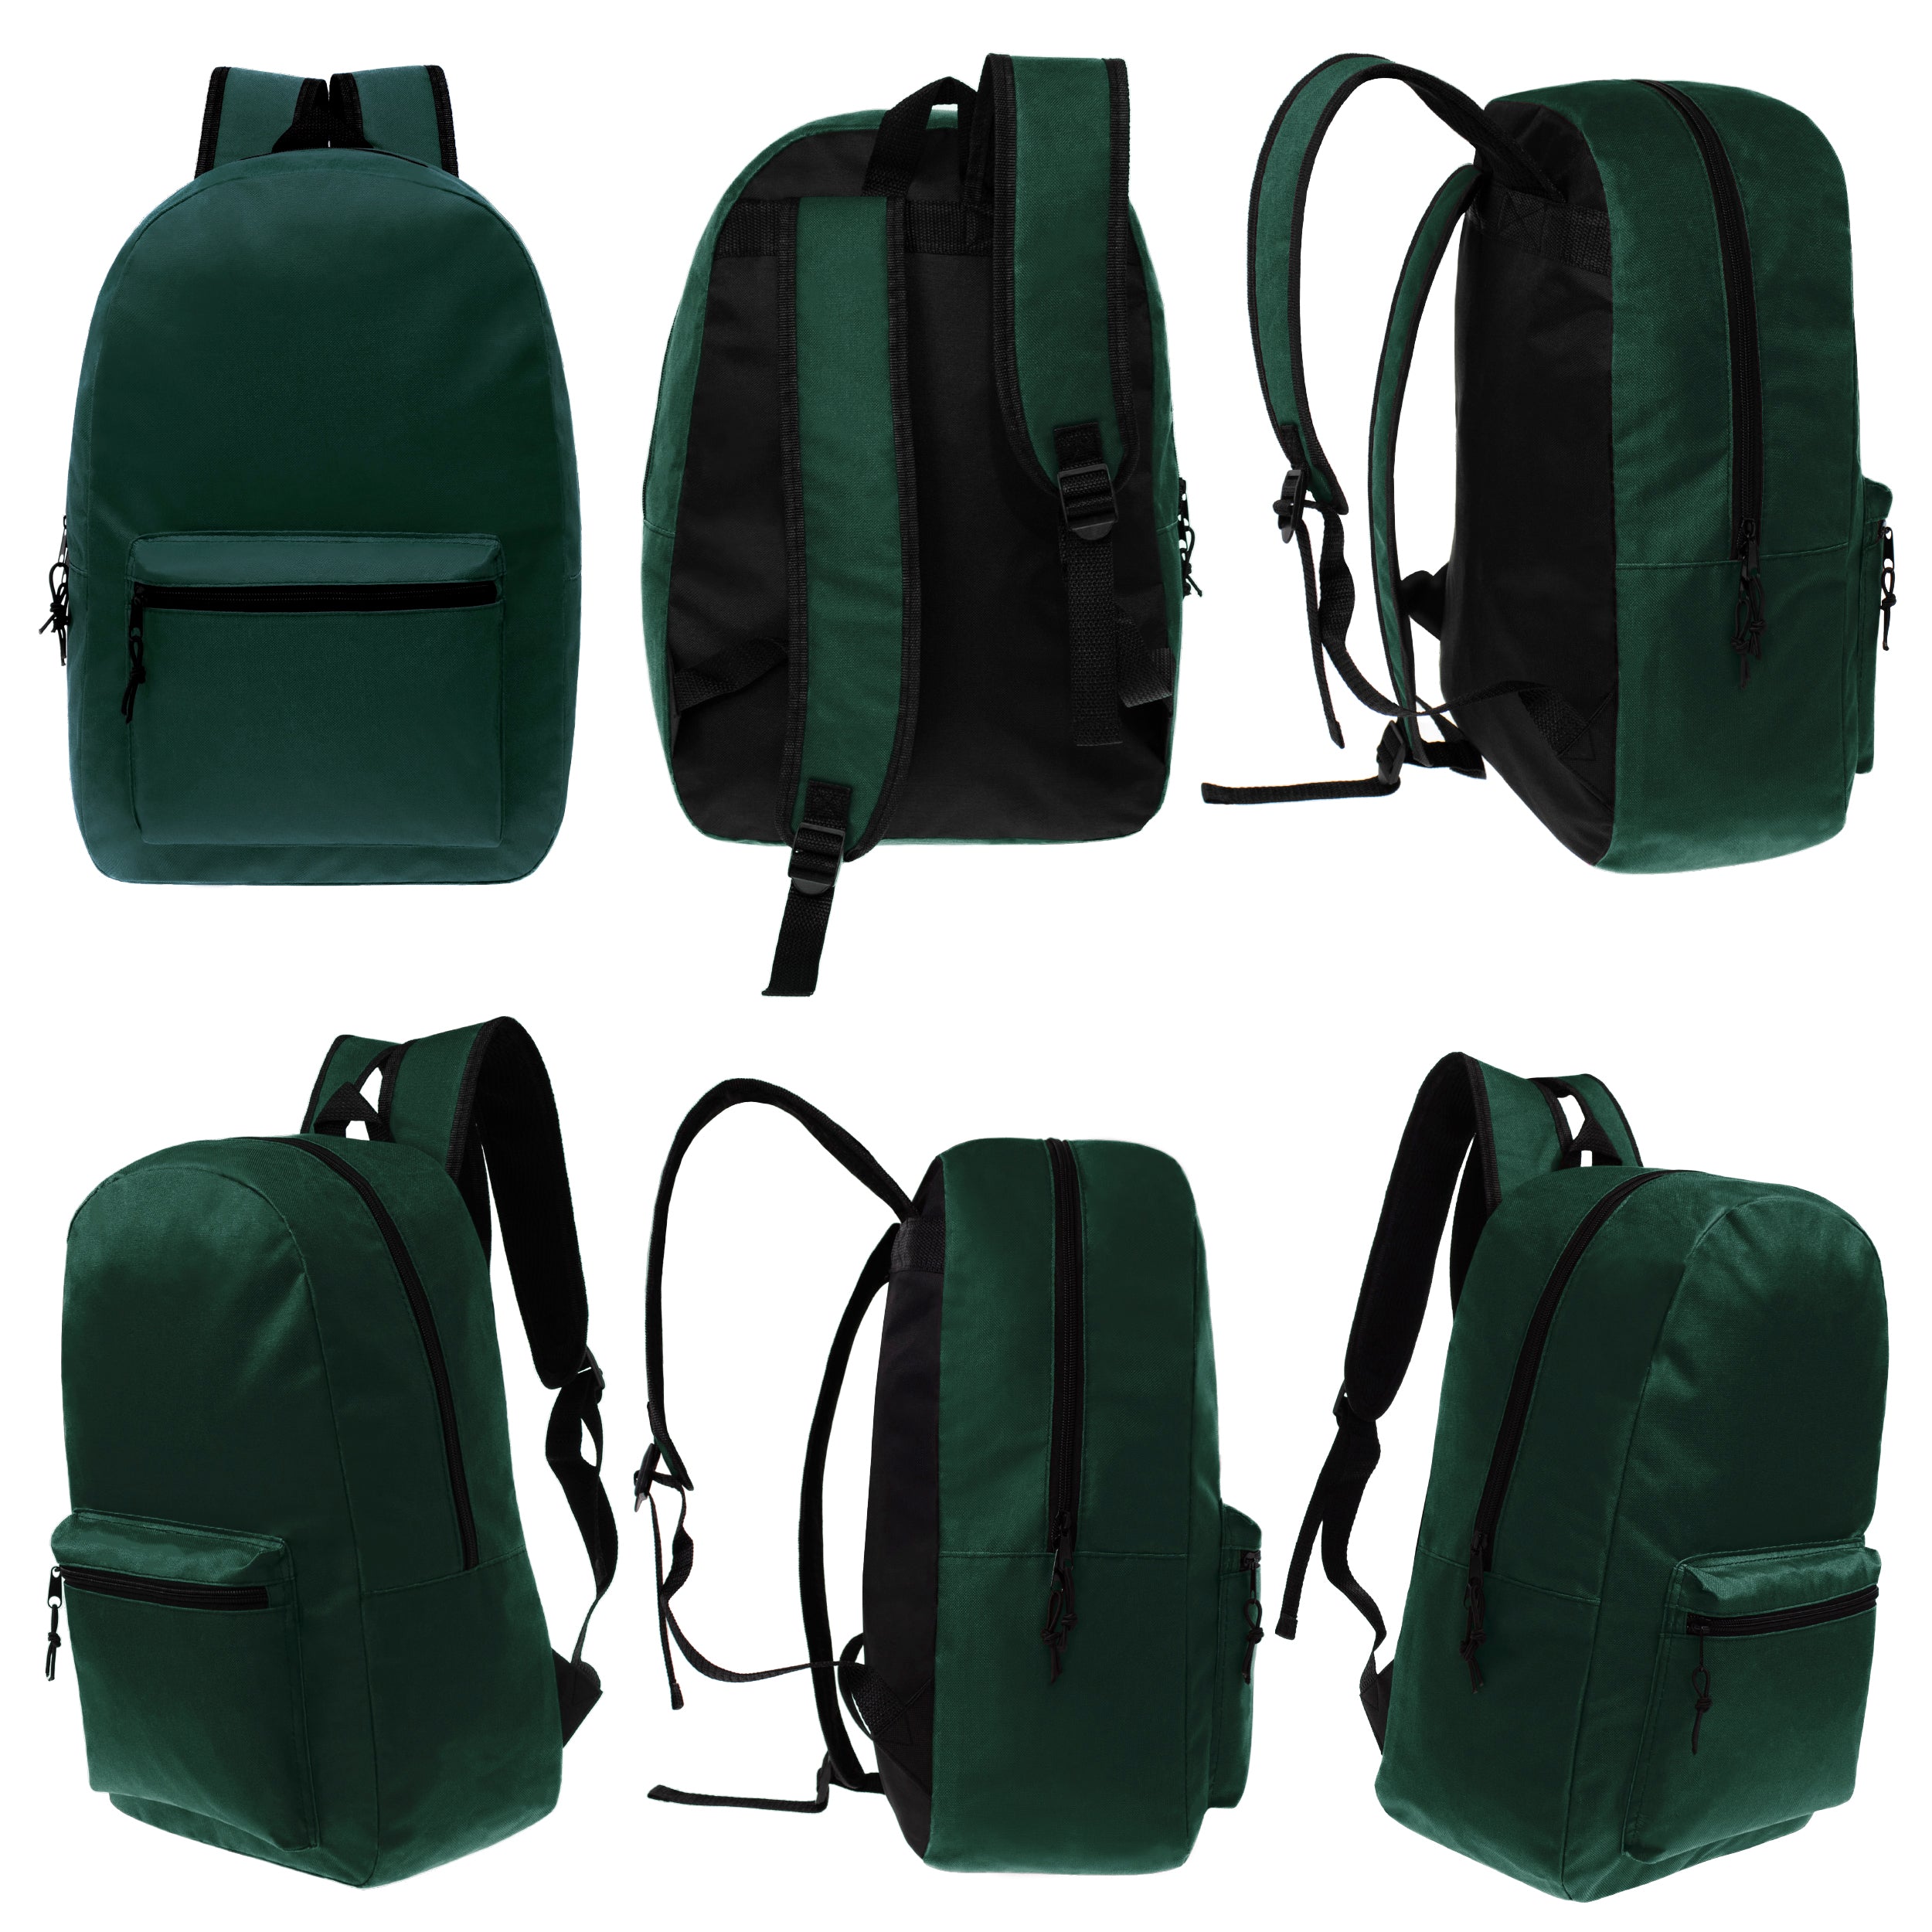 17" Kids Basic Wholesale Backpack in Dark Green- Bulk Case of 24 Backpacks